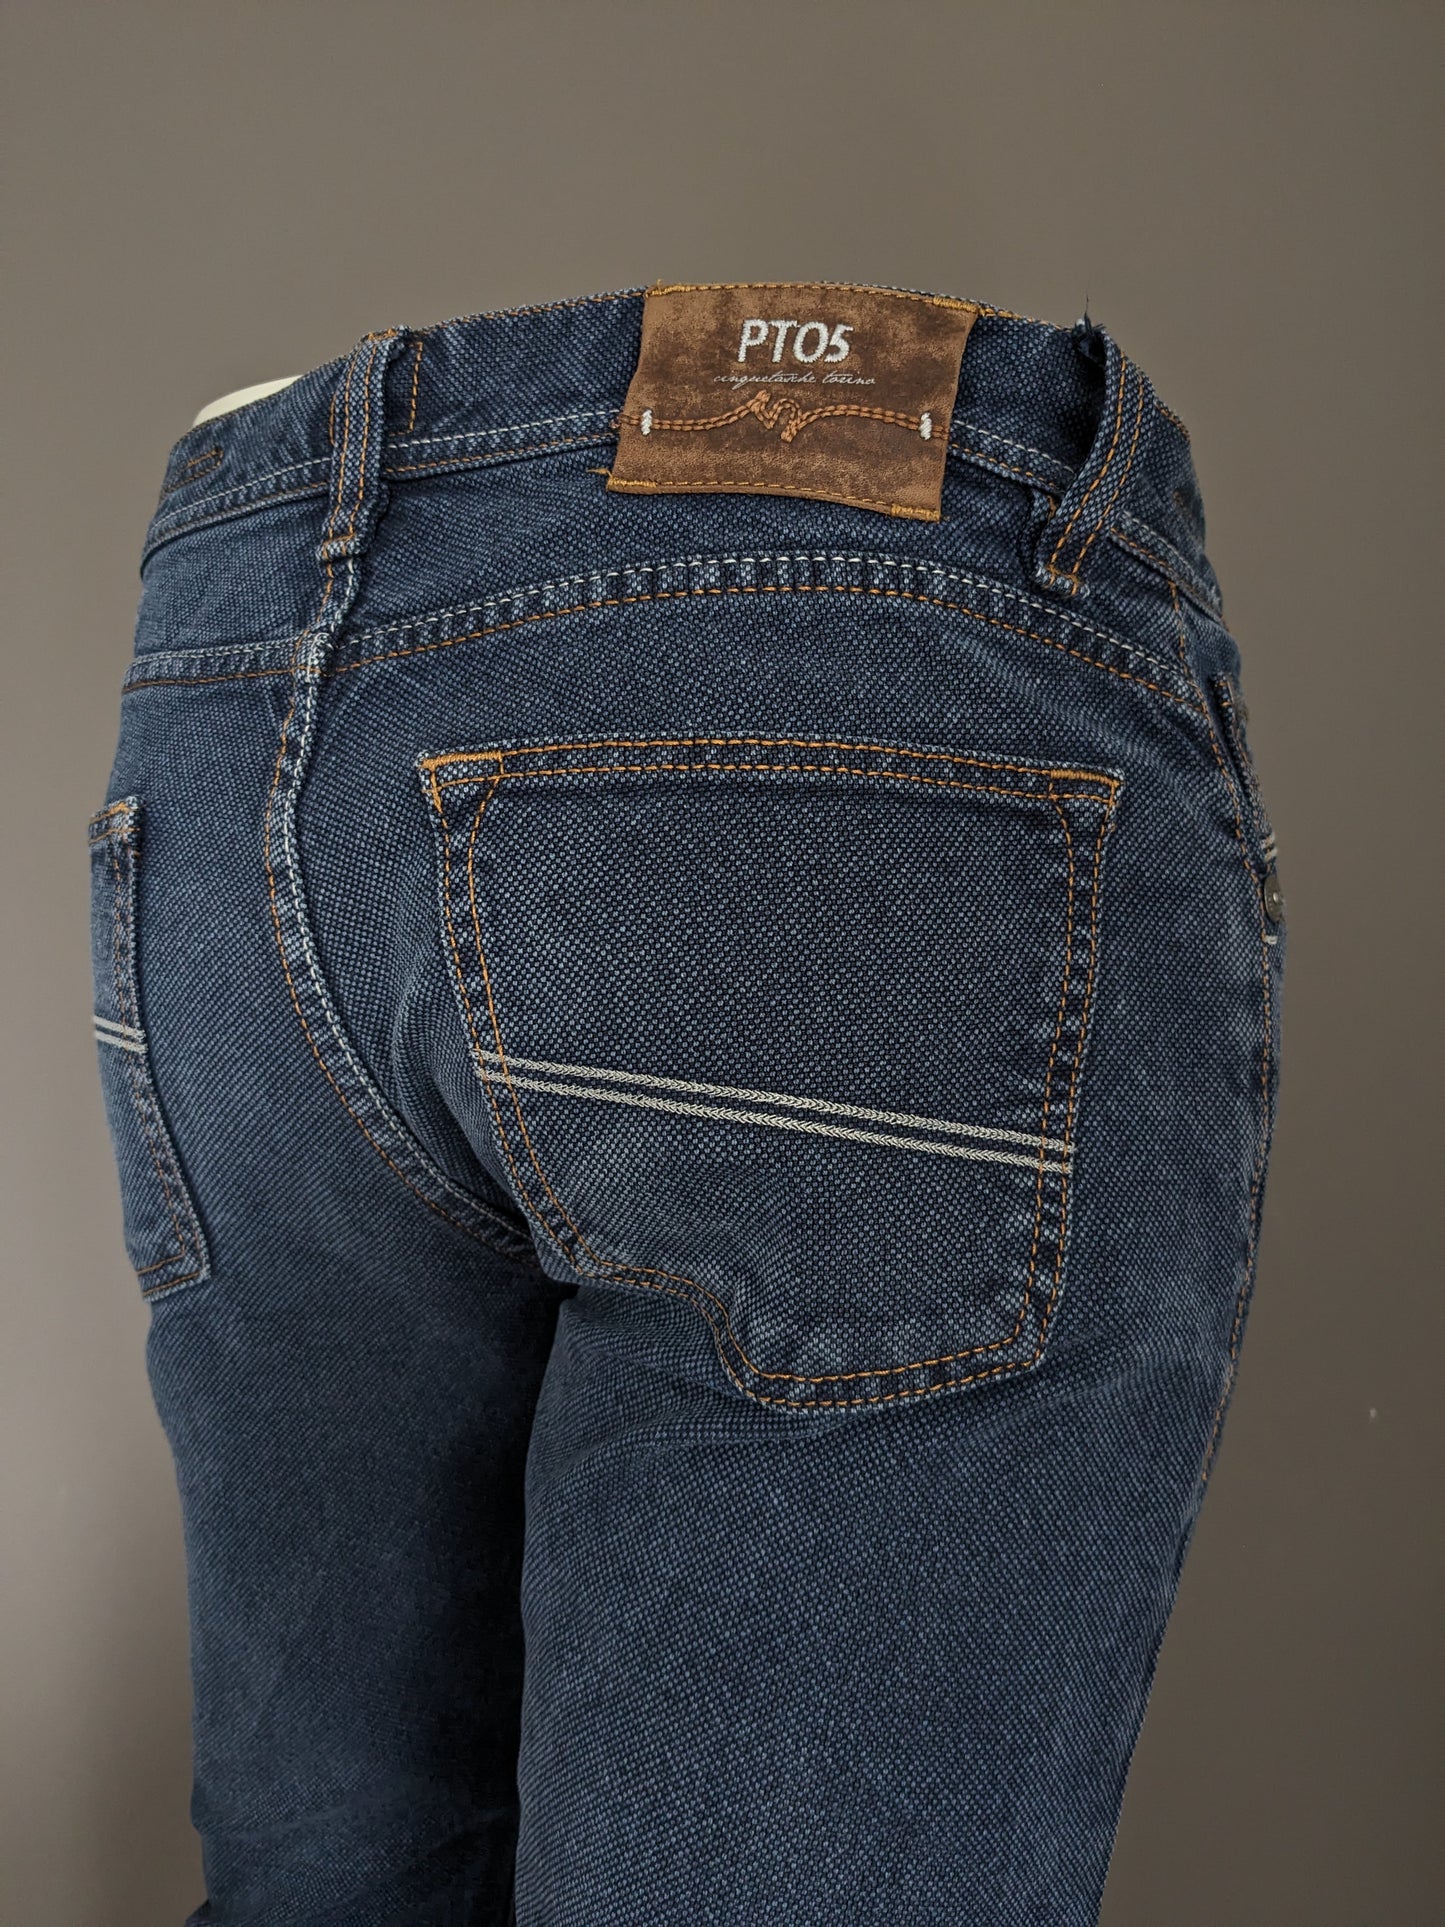 PT05 jeans. Blauw gemêleerd. Maat W30 - L36.